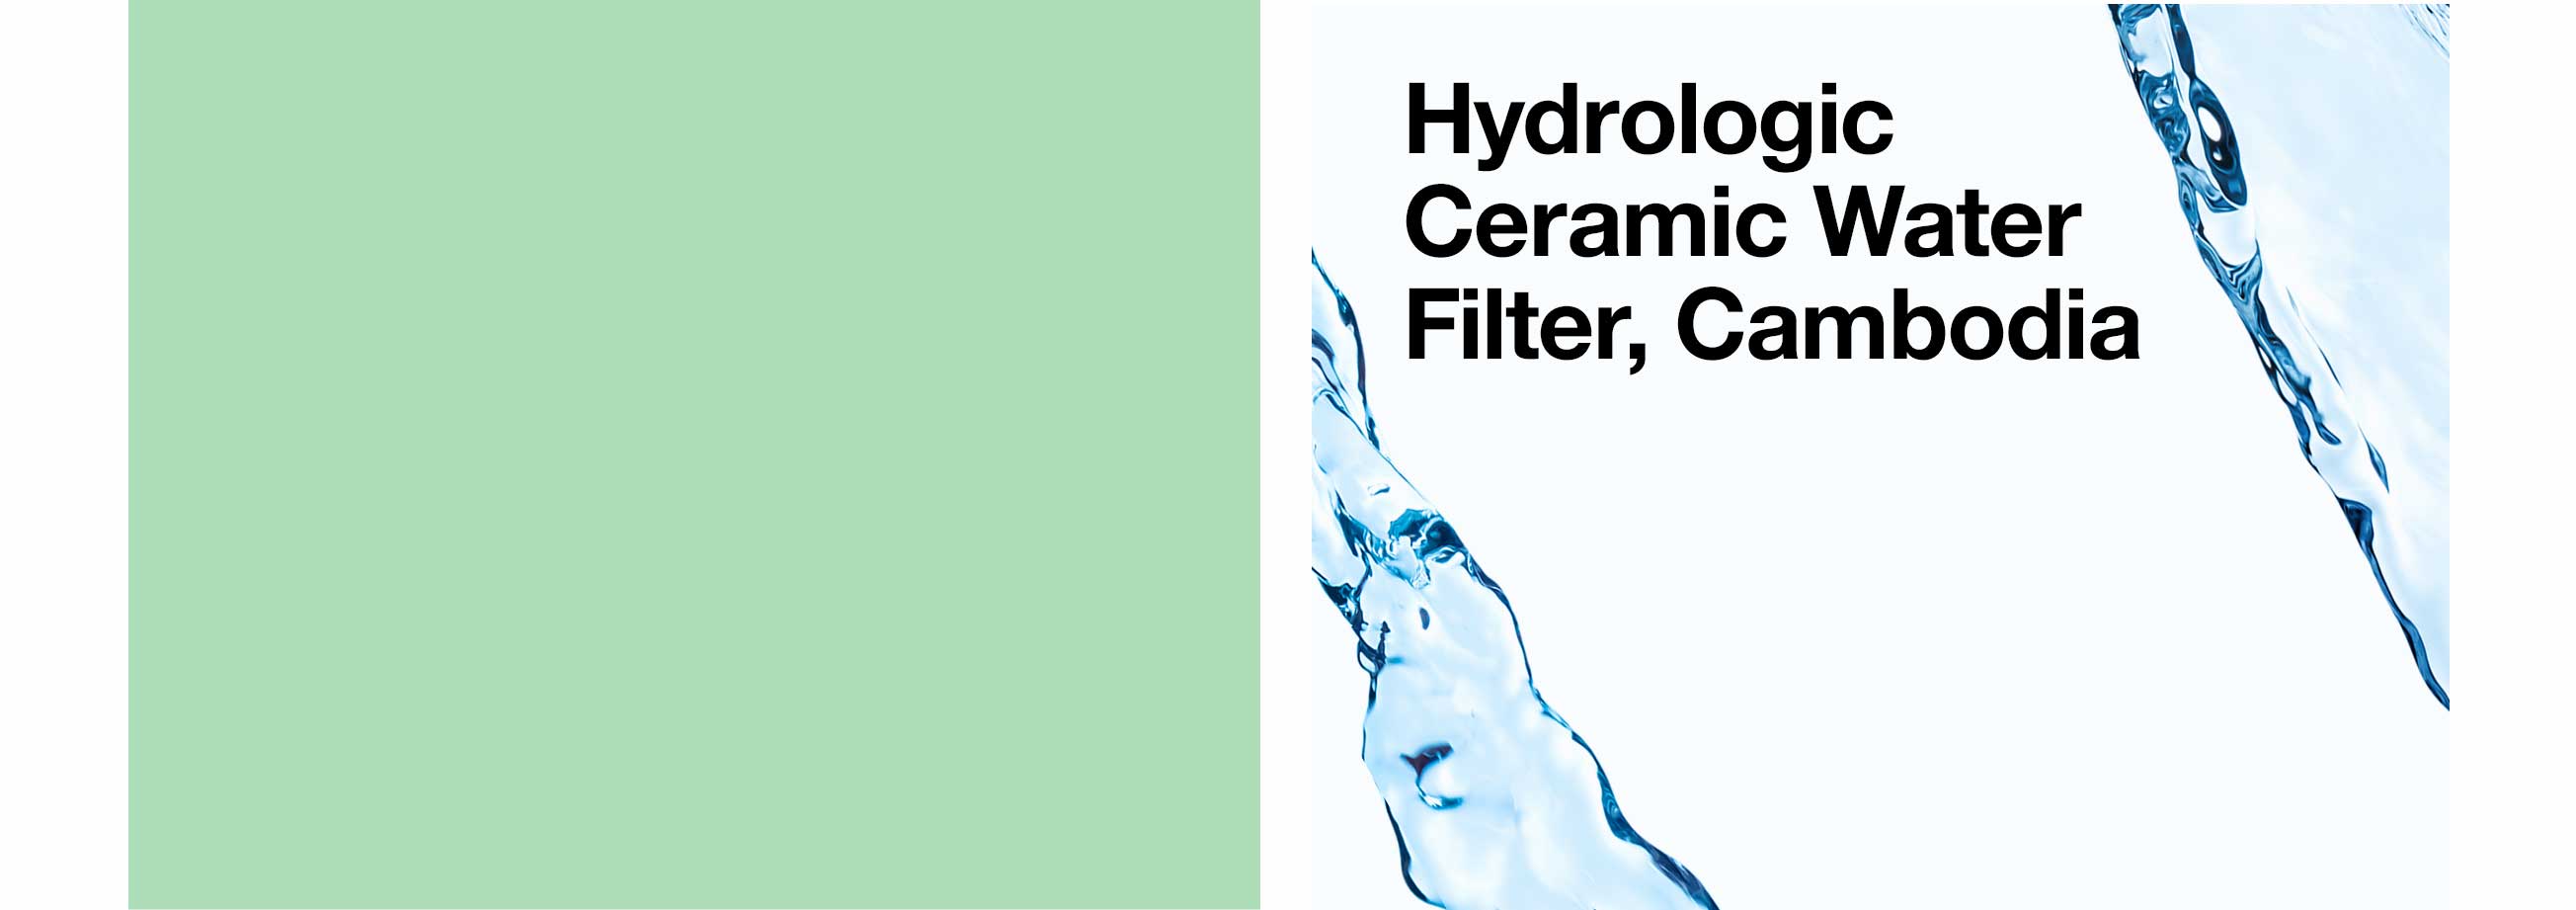 Hydrologic Ceramic Water Filter, Cambodia